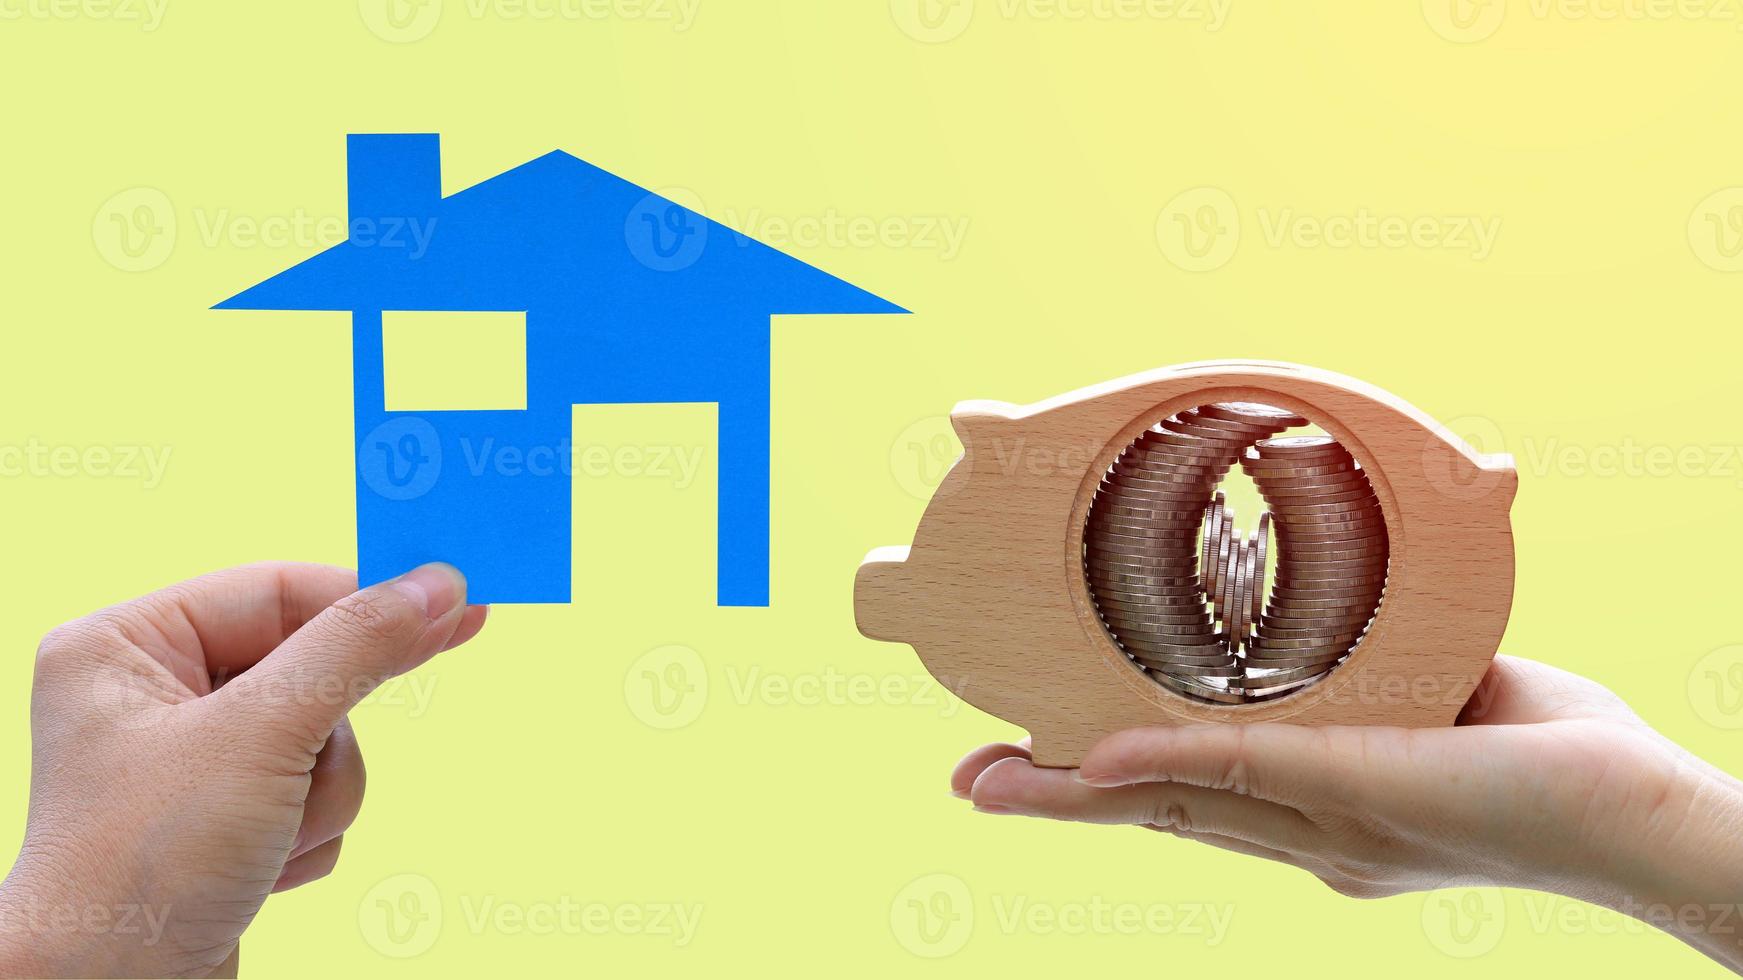 handen met een modelhuis en een houten spaarvarken met muntstapels die binnen op gele achtergrond worden geplaatst foto